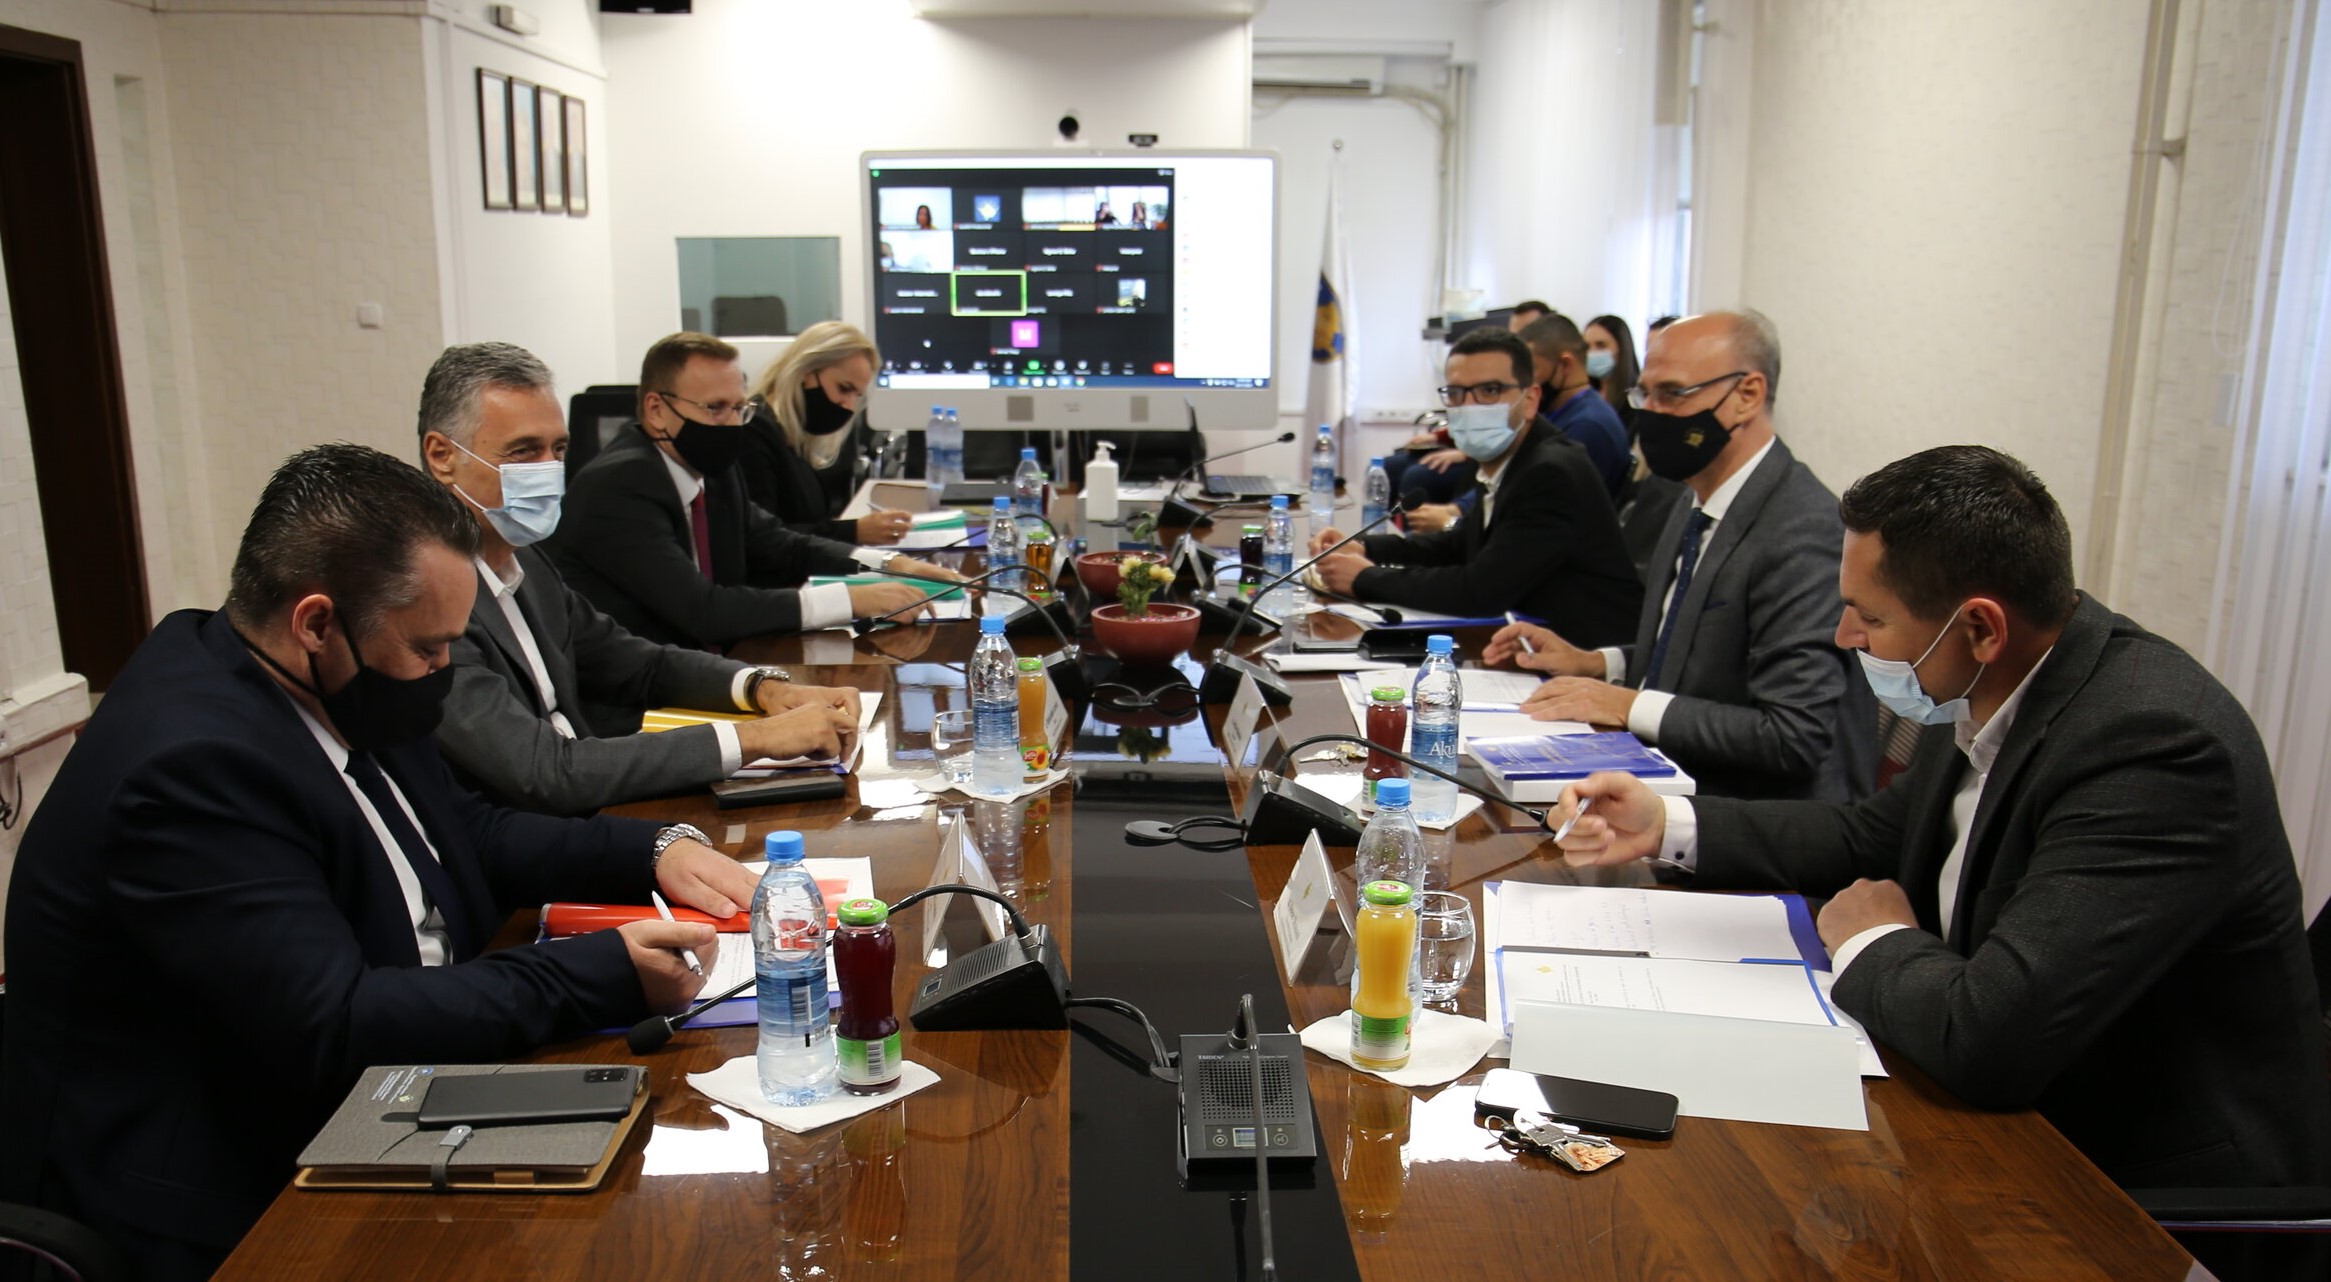 Këshilli Prokurorial i Kosovës ka mbajtur takimin e 204-të me radhë